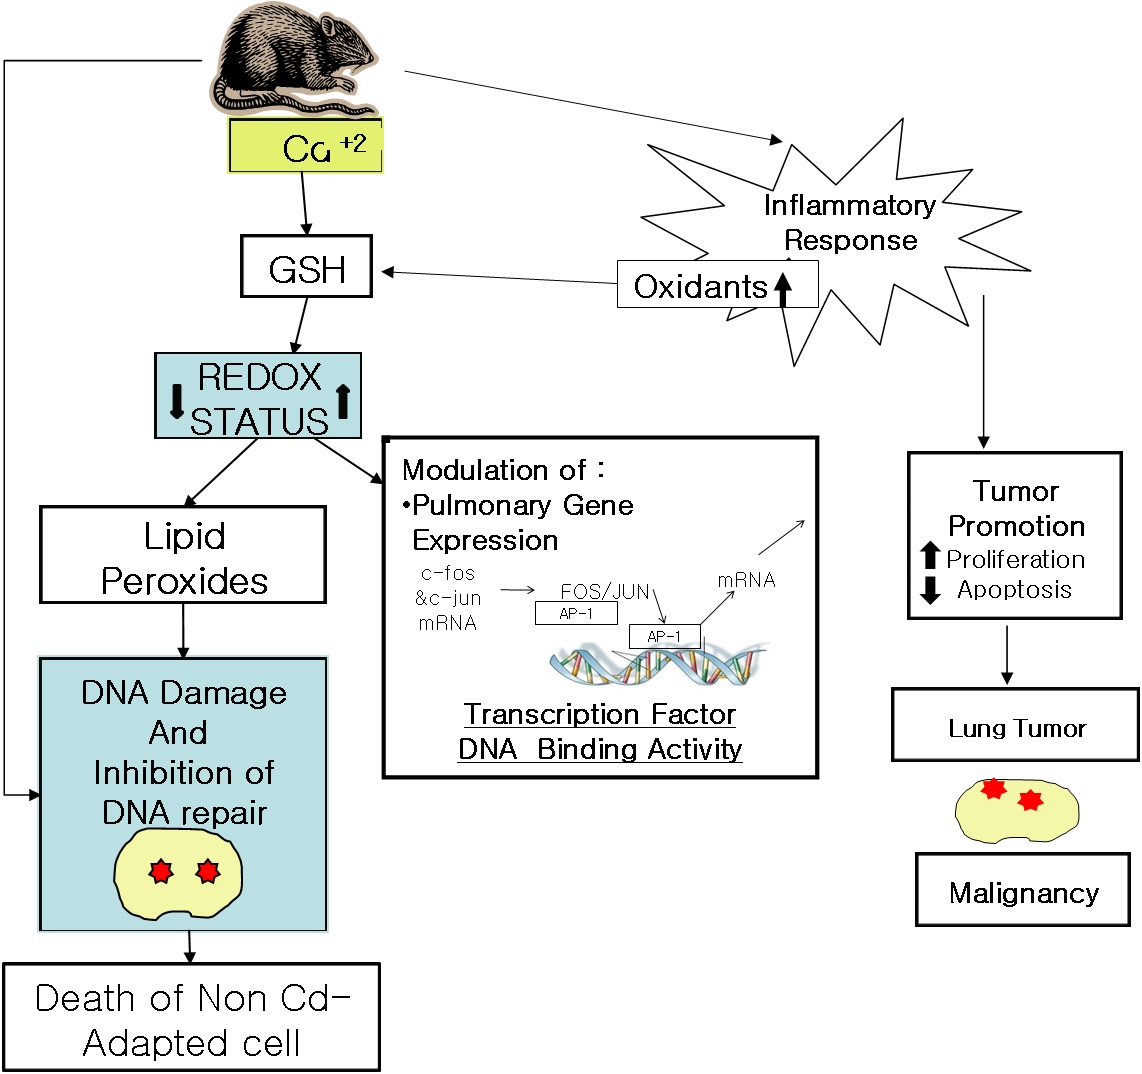 그림 21. 카드뮴 섭취에 의한 DNA 손상 및 repair 억제로 인해 발생되는 발암의 과정 모식도